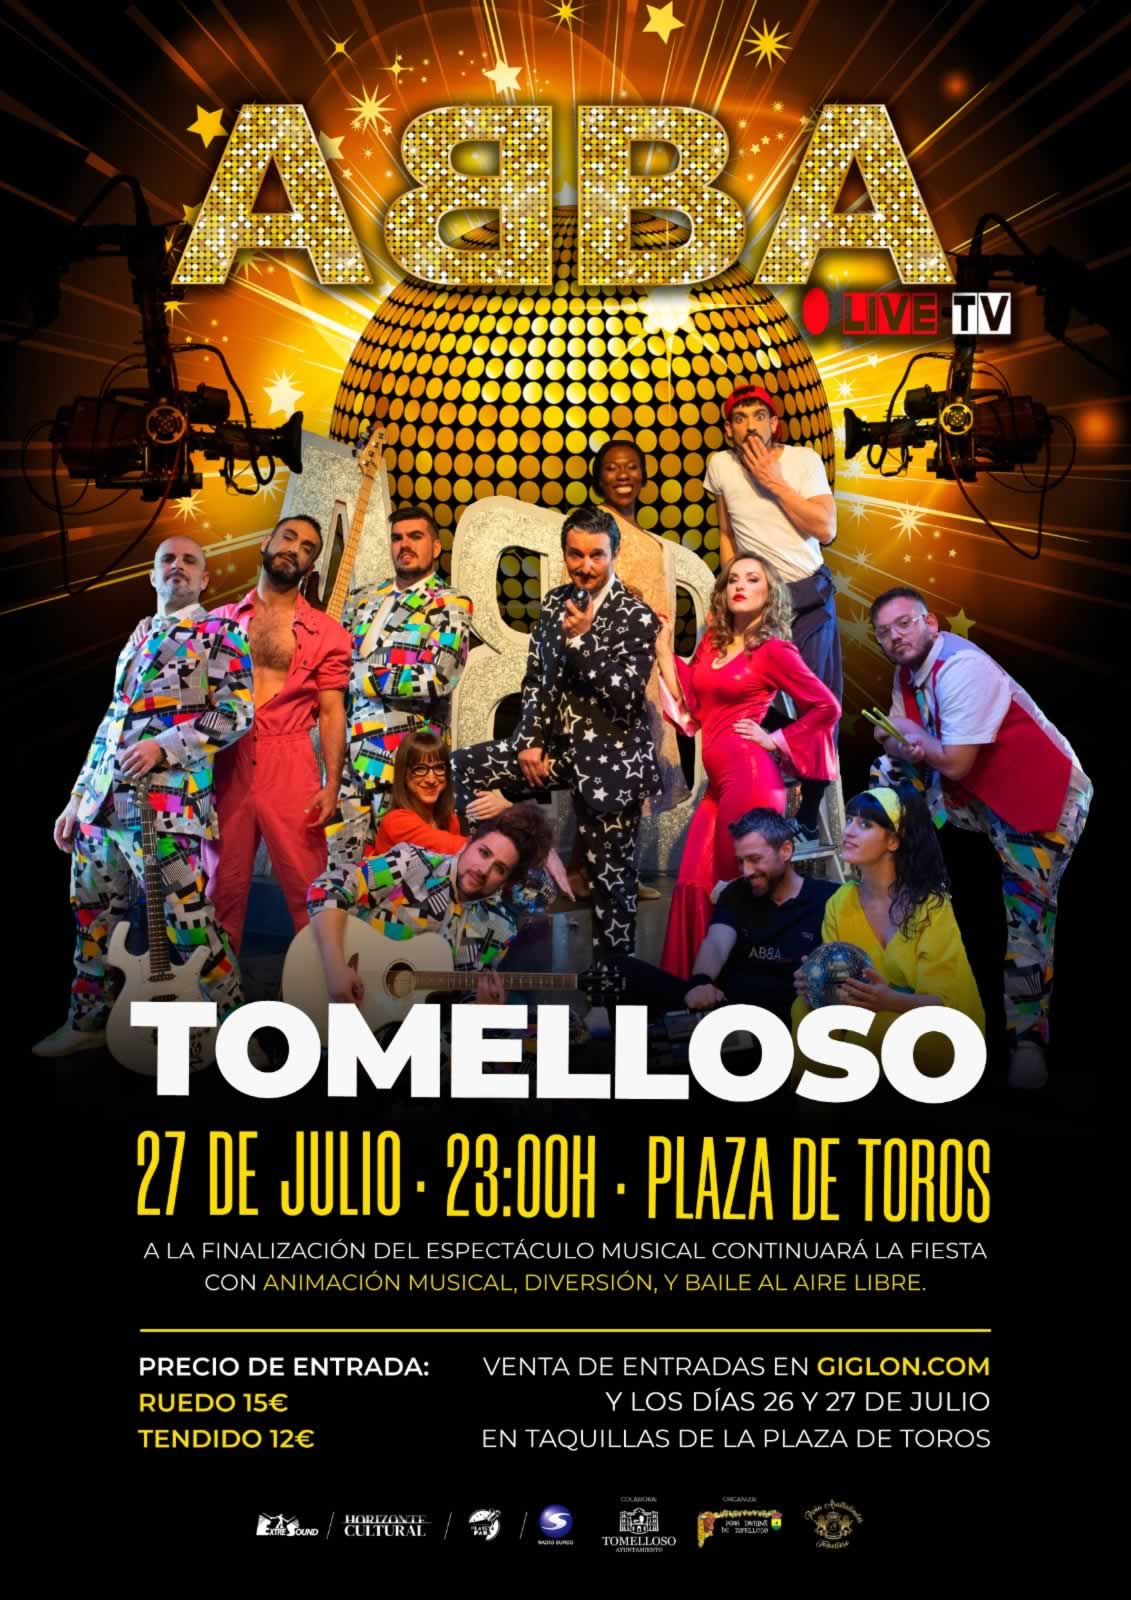 Tomelloso acogerá el gran musical "ABBA Live TV" el 27 de julio